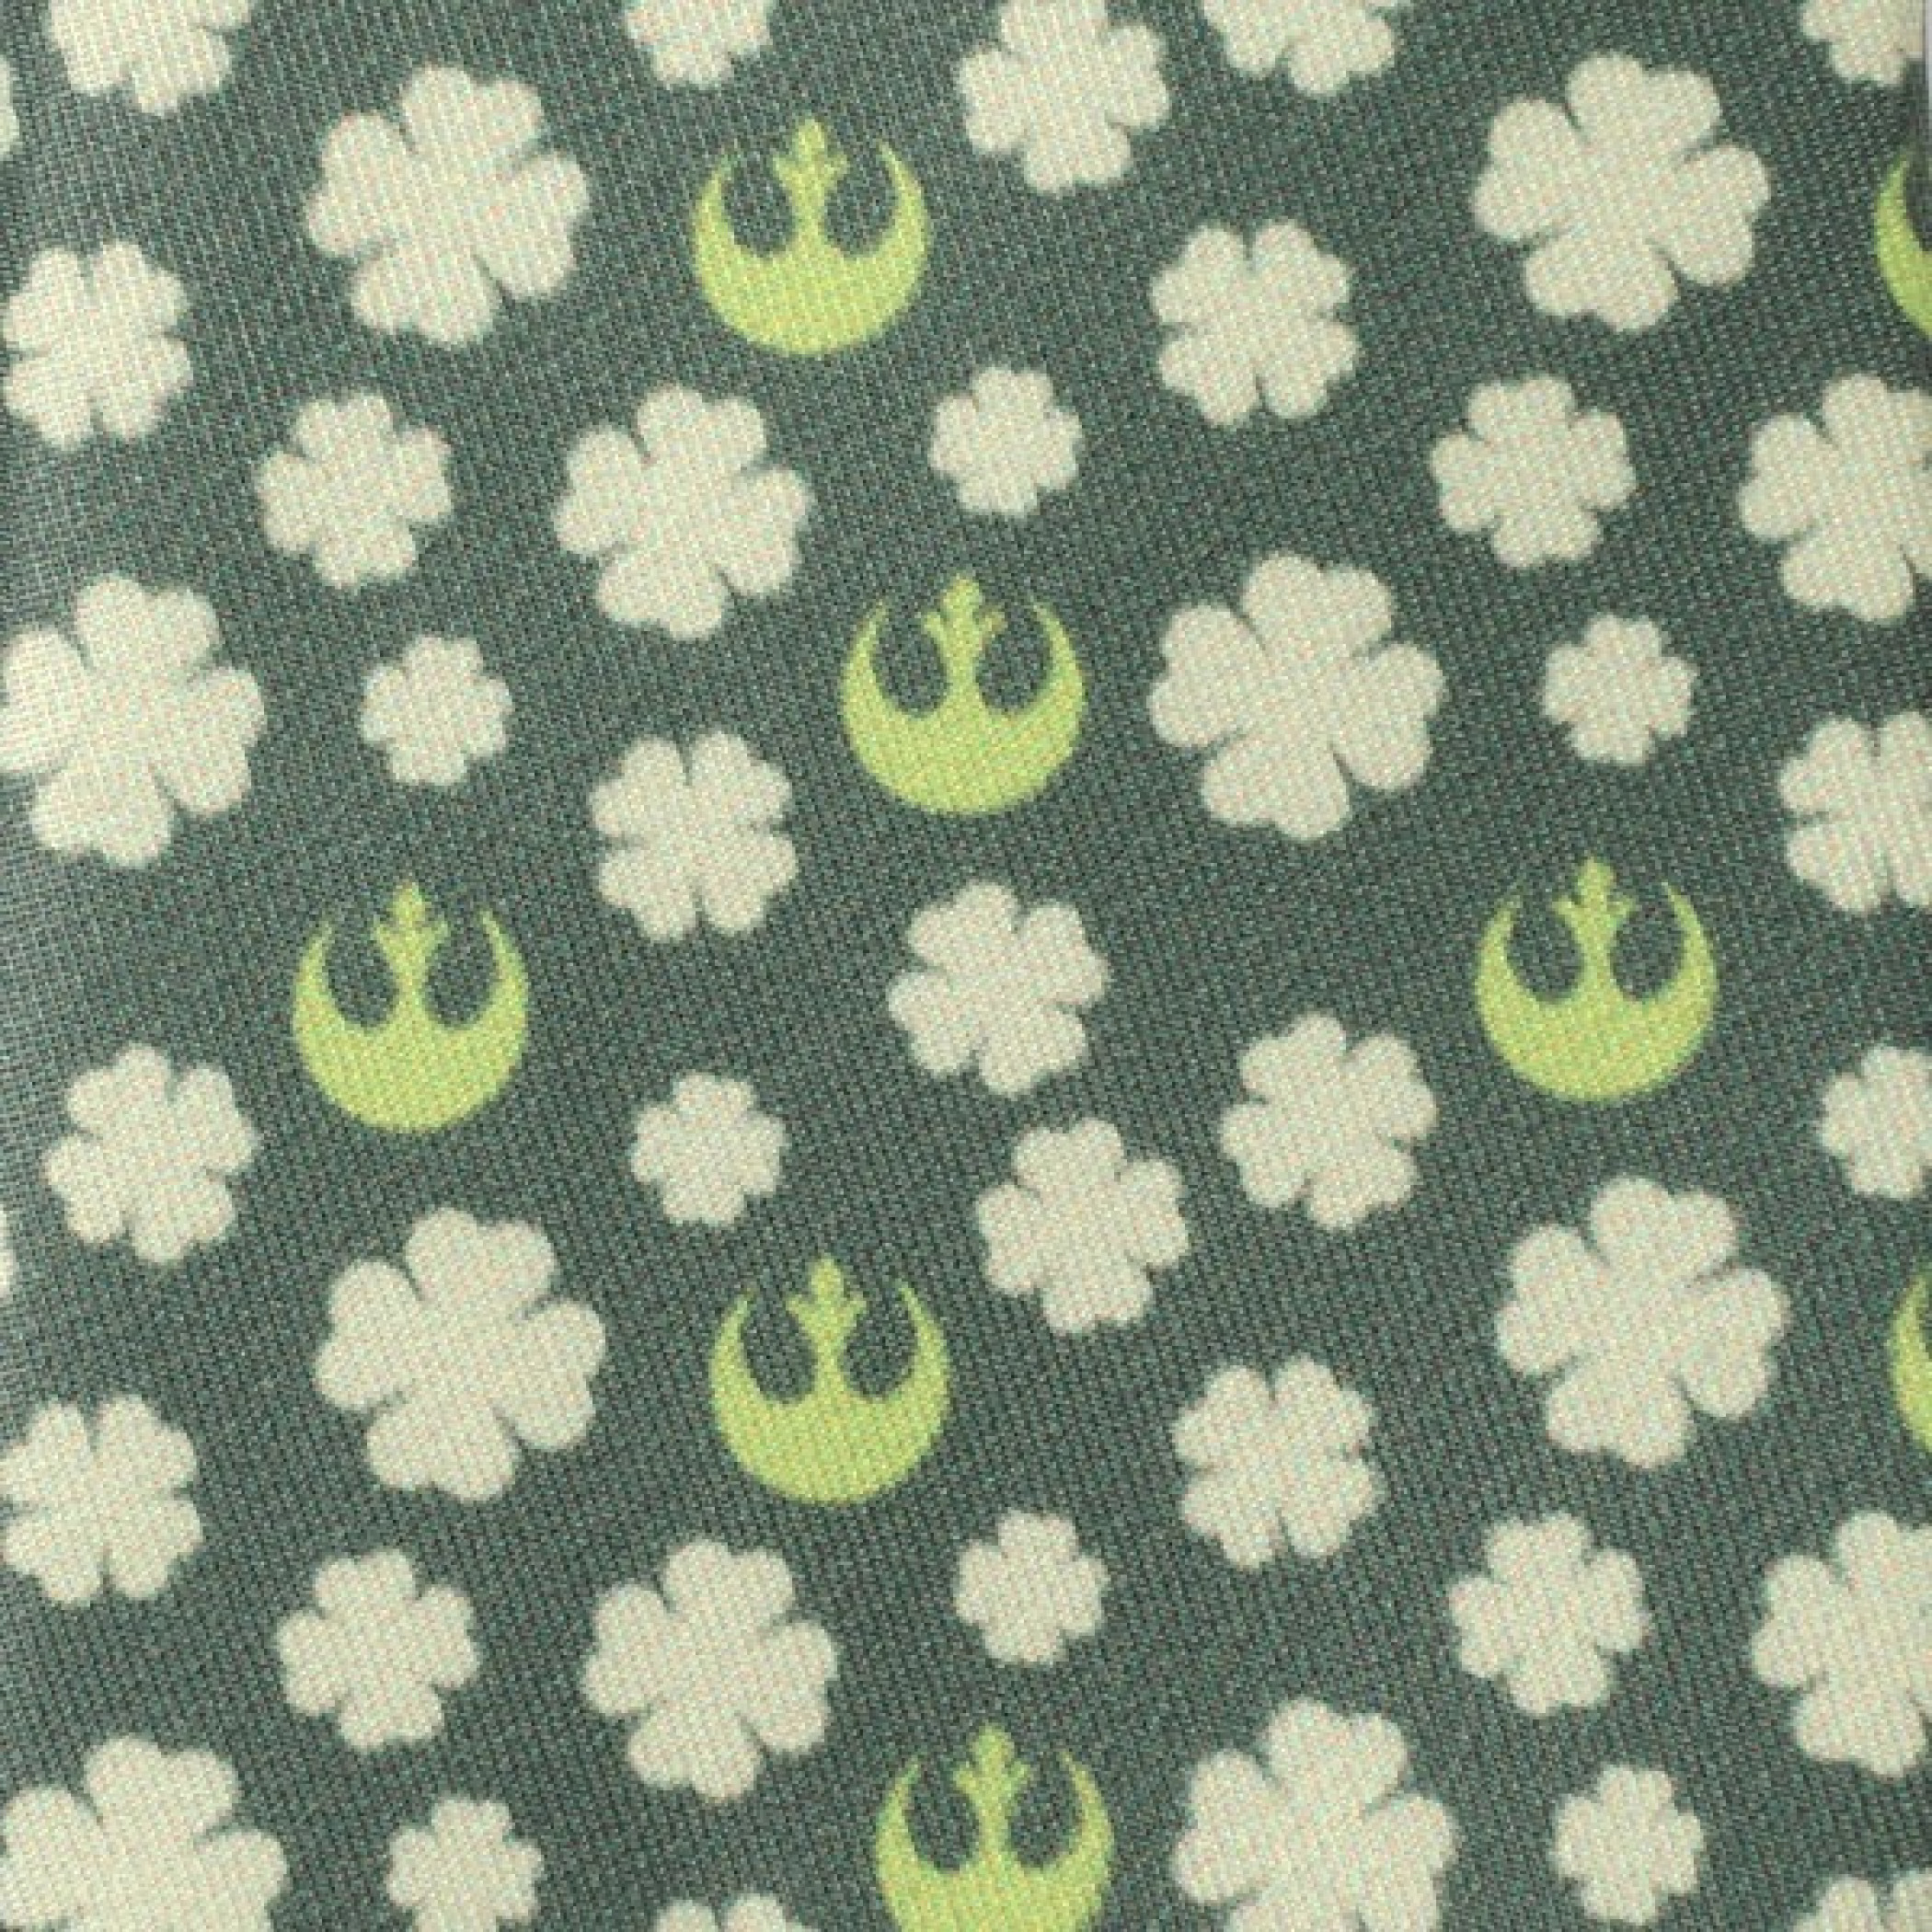 Star Wars Rebel Shamrock Green Hidden Message Men's Tie